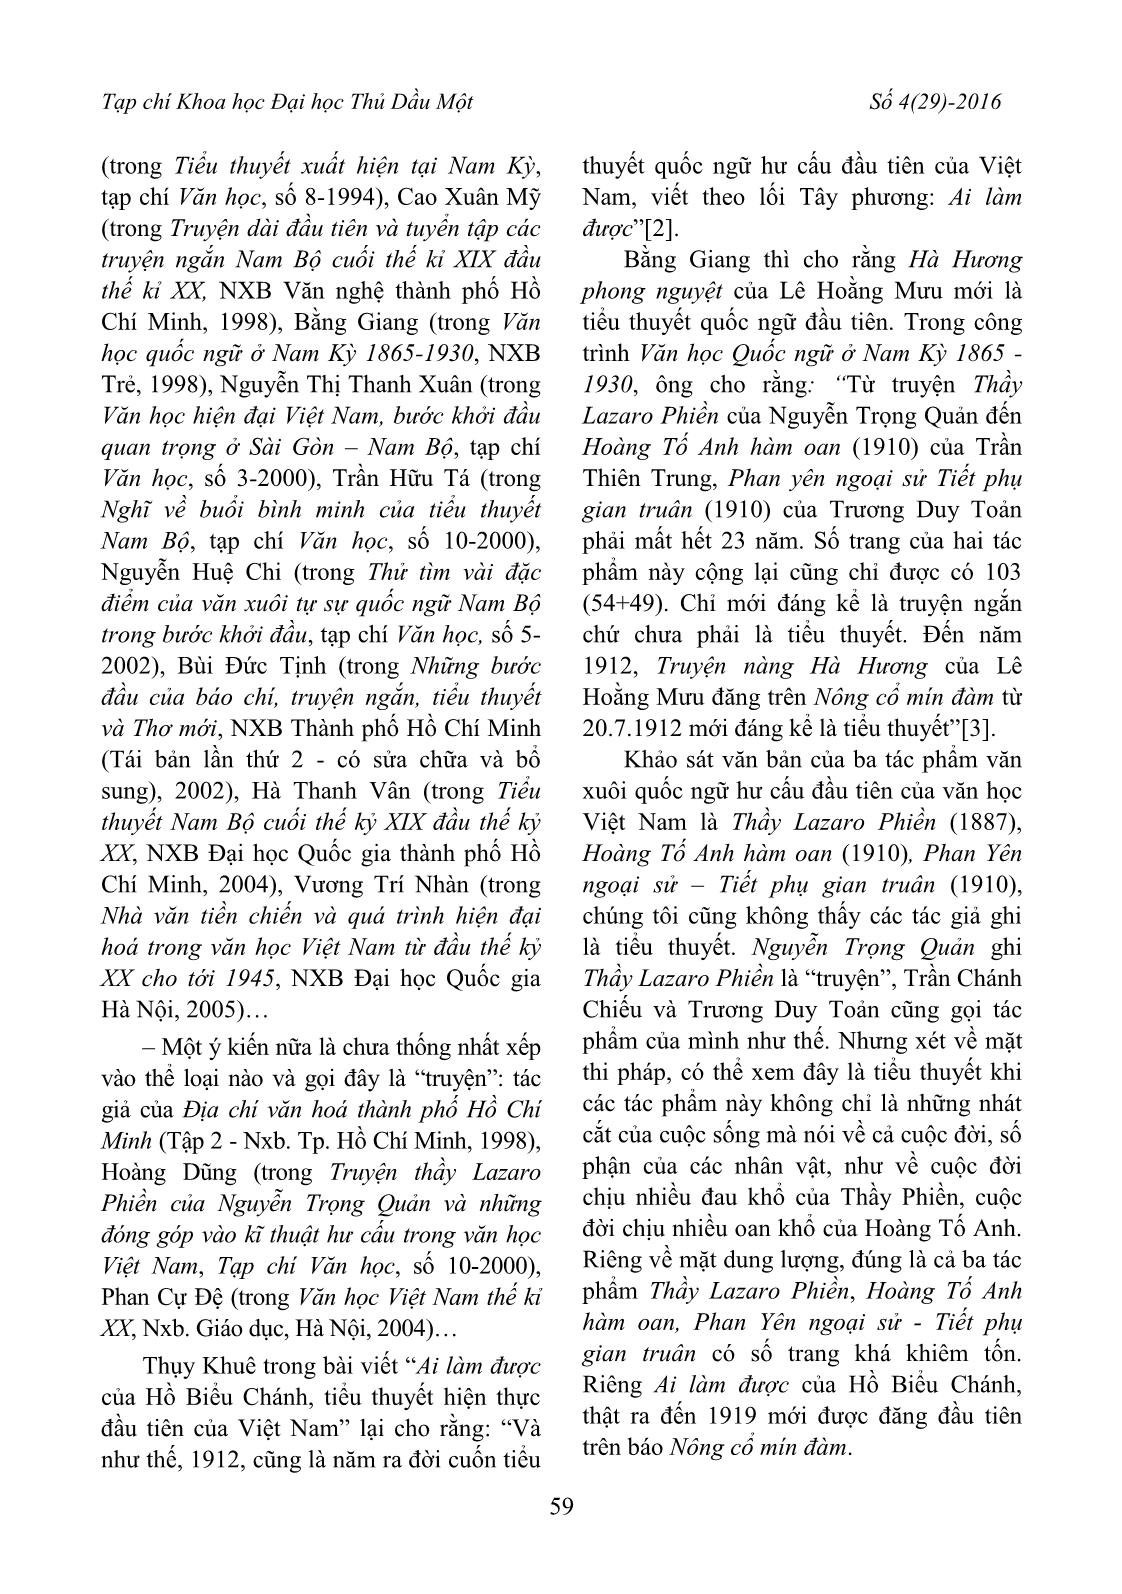 Tiểu thuyết quốc ngữ Nam Bộ cuối thế kỷ XIX đầu thế kỷ XX – một số vấn đề còn tranh cãi trang 2